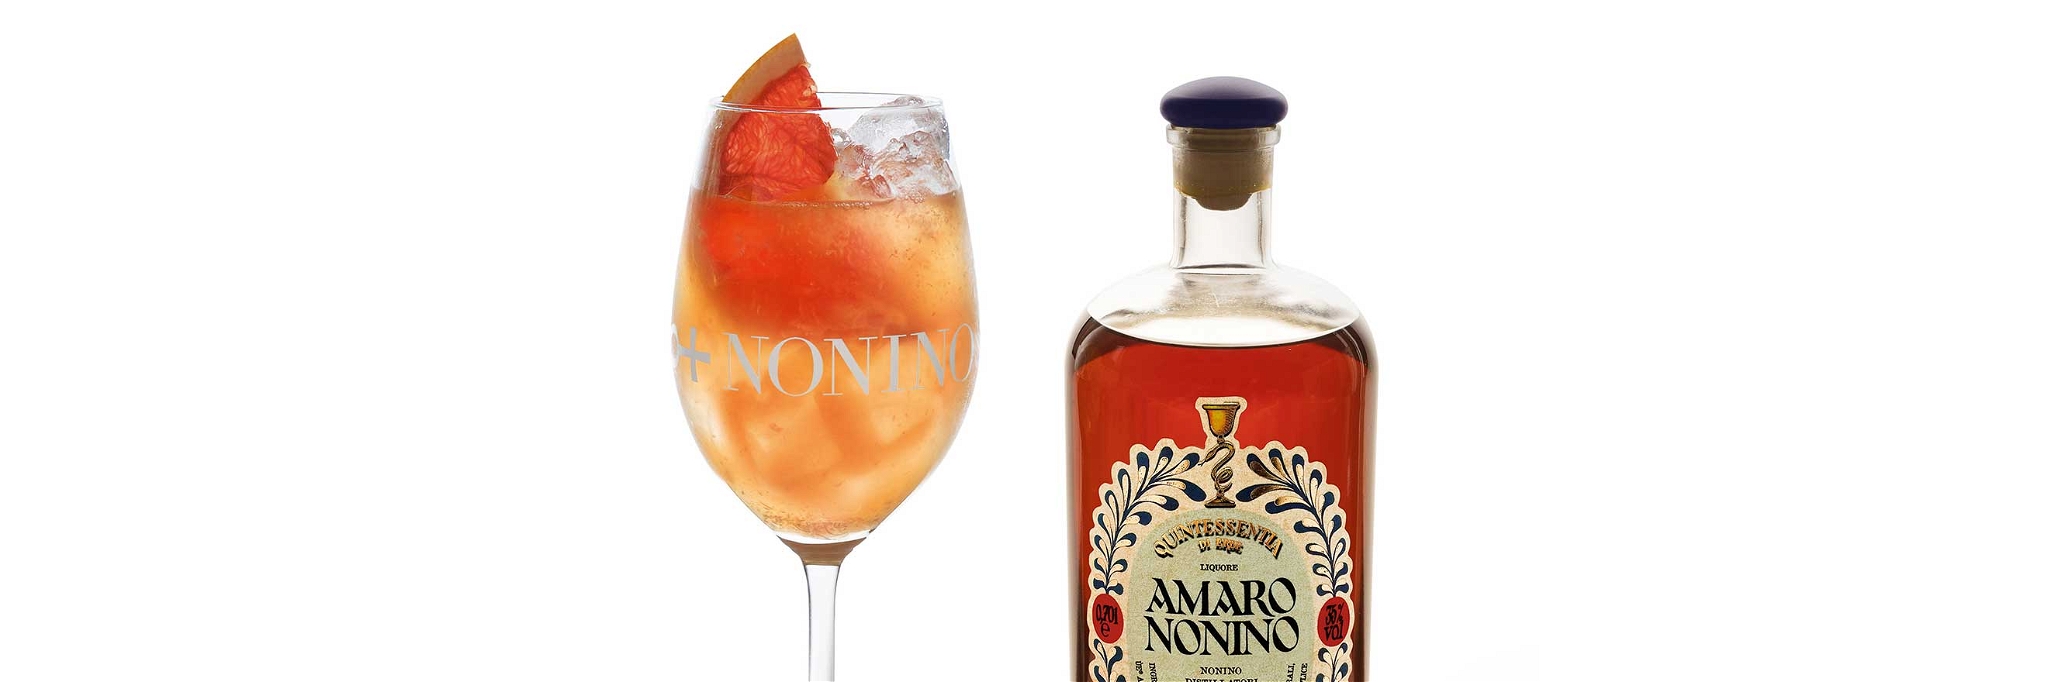 Der Amaro Nonino Quintessentia wird aus Nonino Grappa und ausgewählten Kräutern hergestellt und in französischen Eichenfässern gereift.